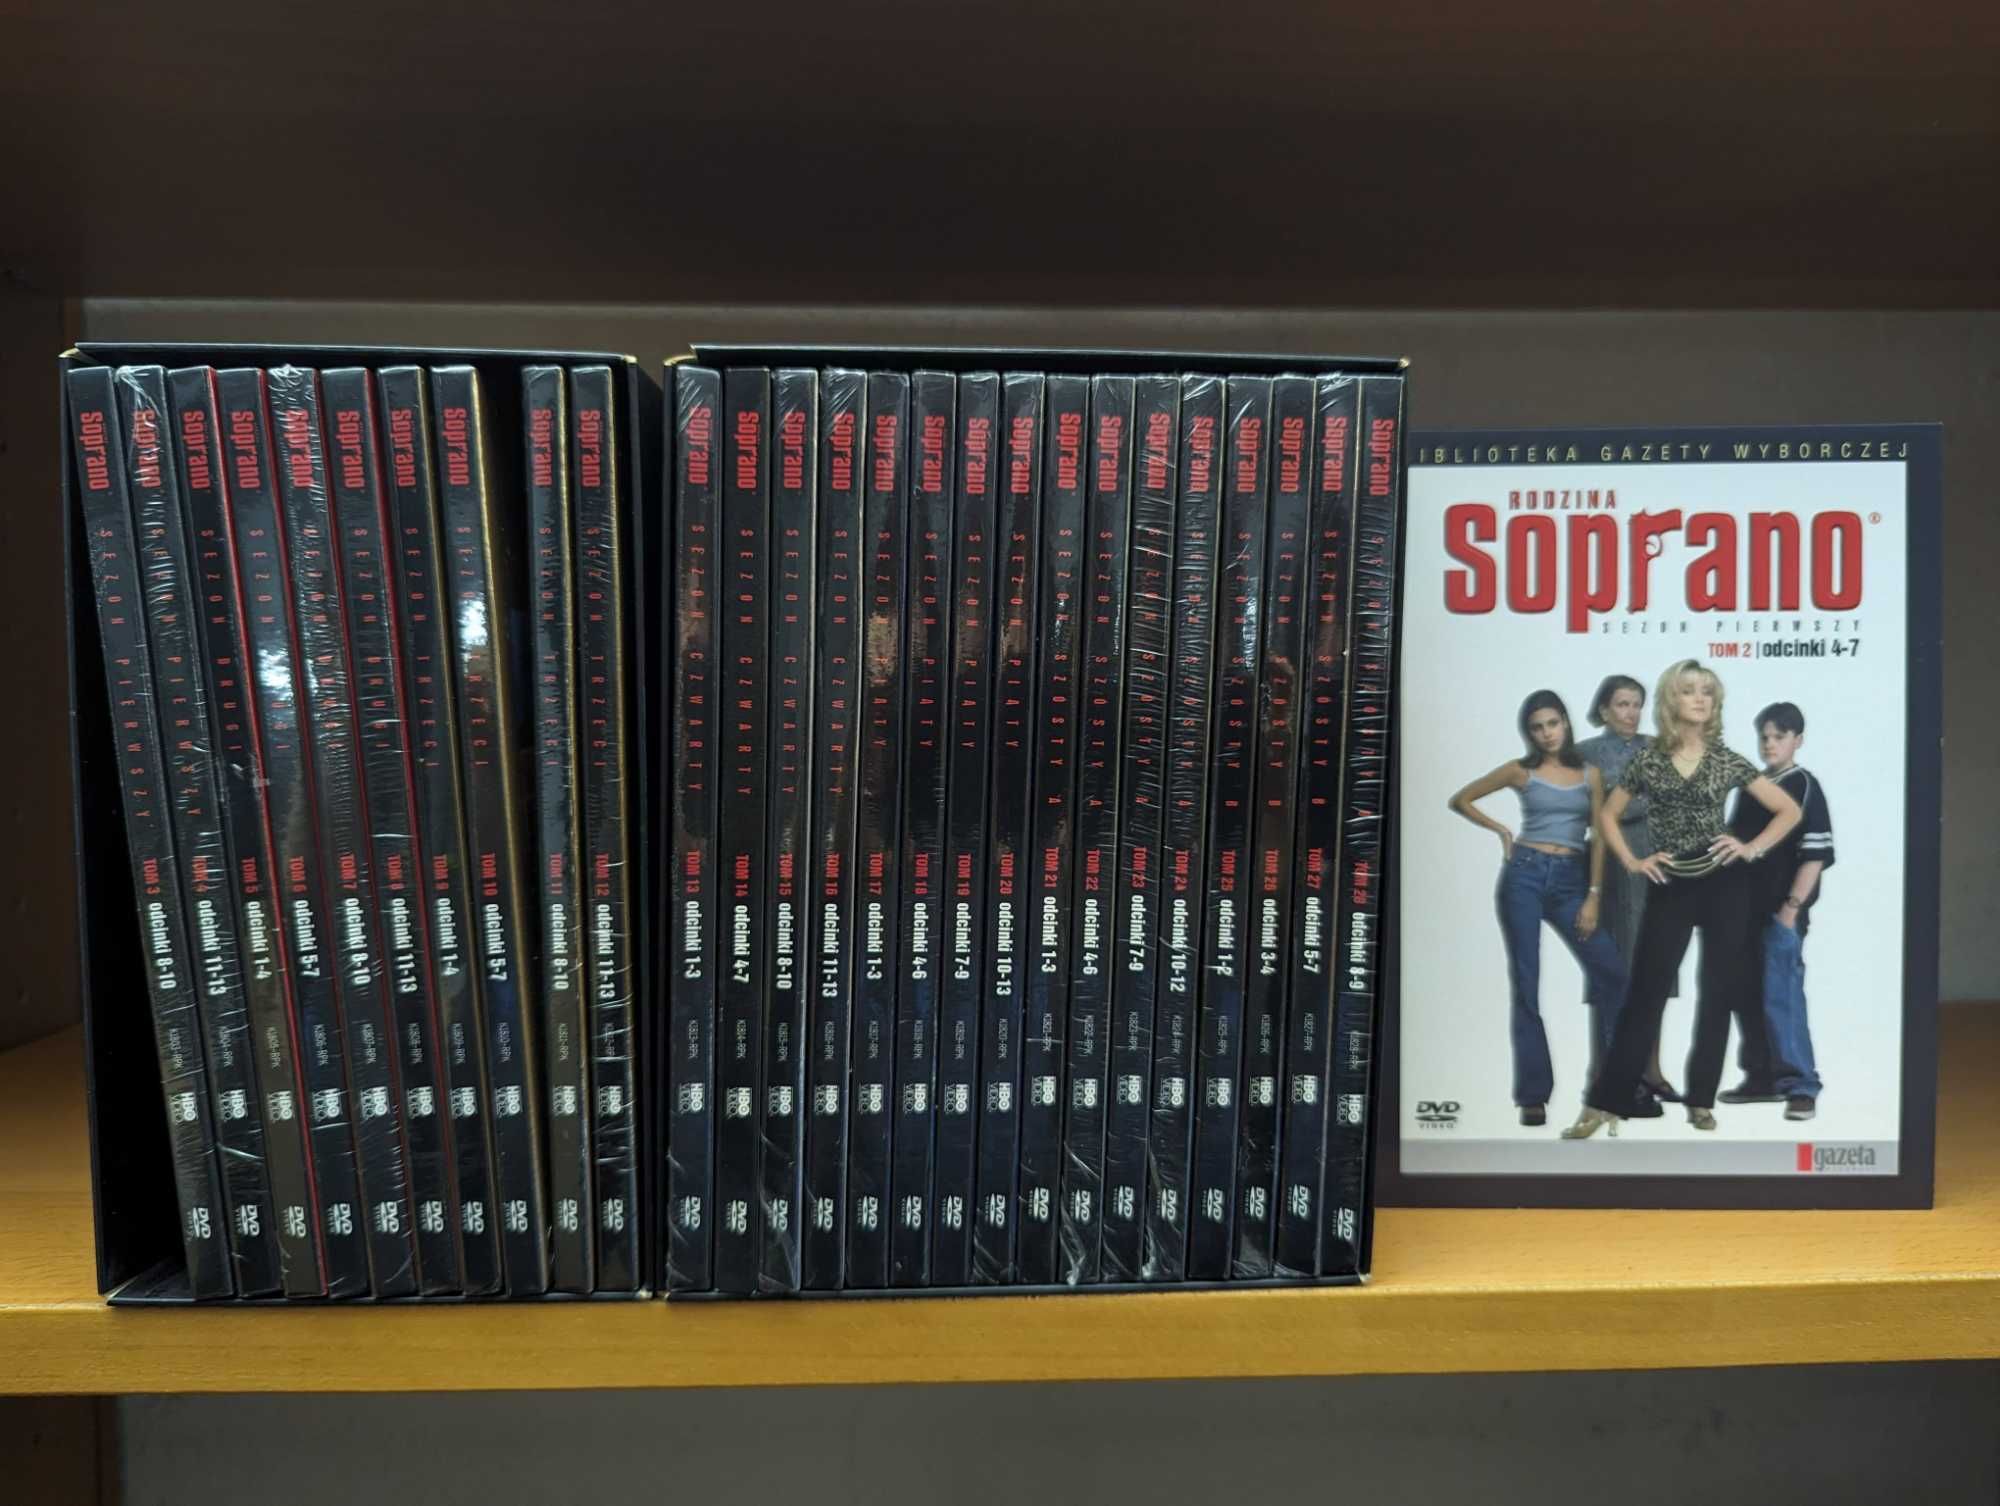 Rodzina Soprano - kolekcja 28 płyt DVD, folia